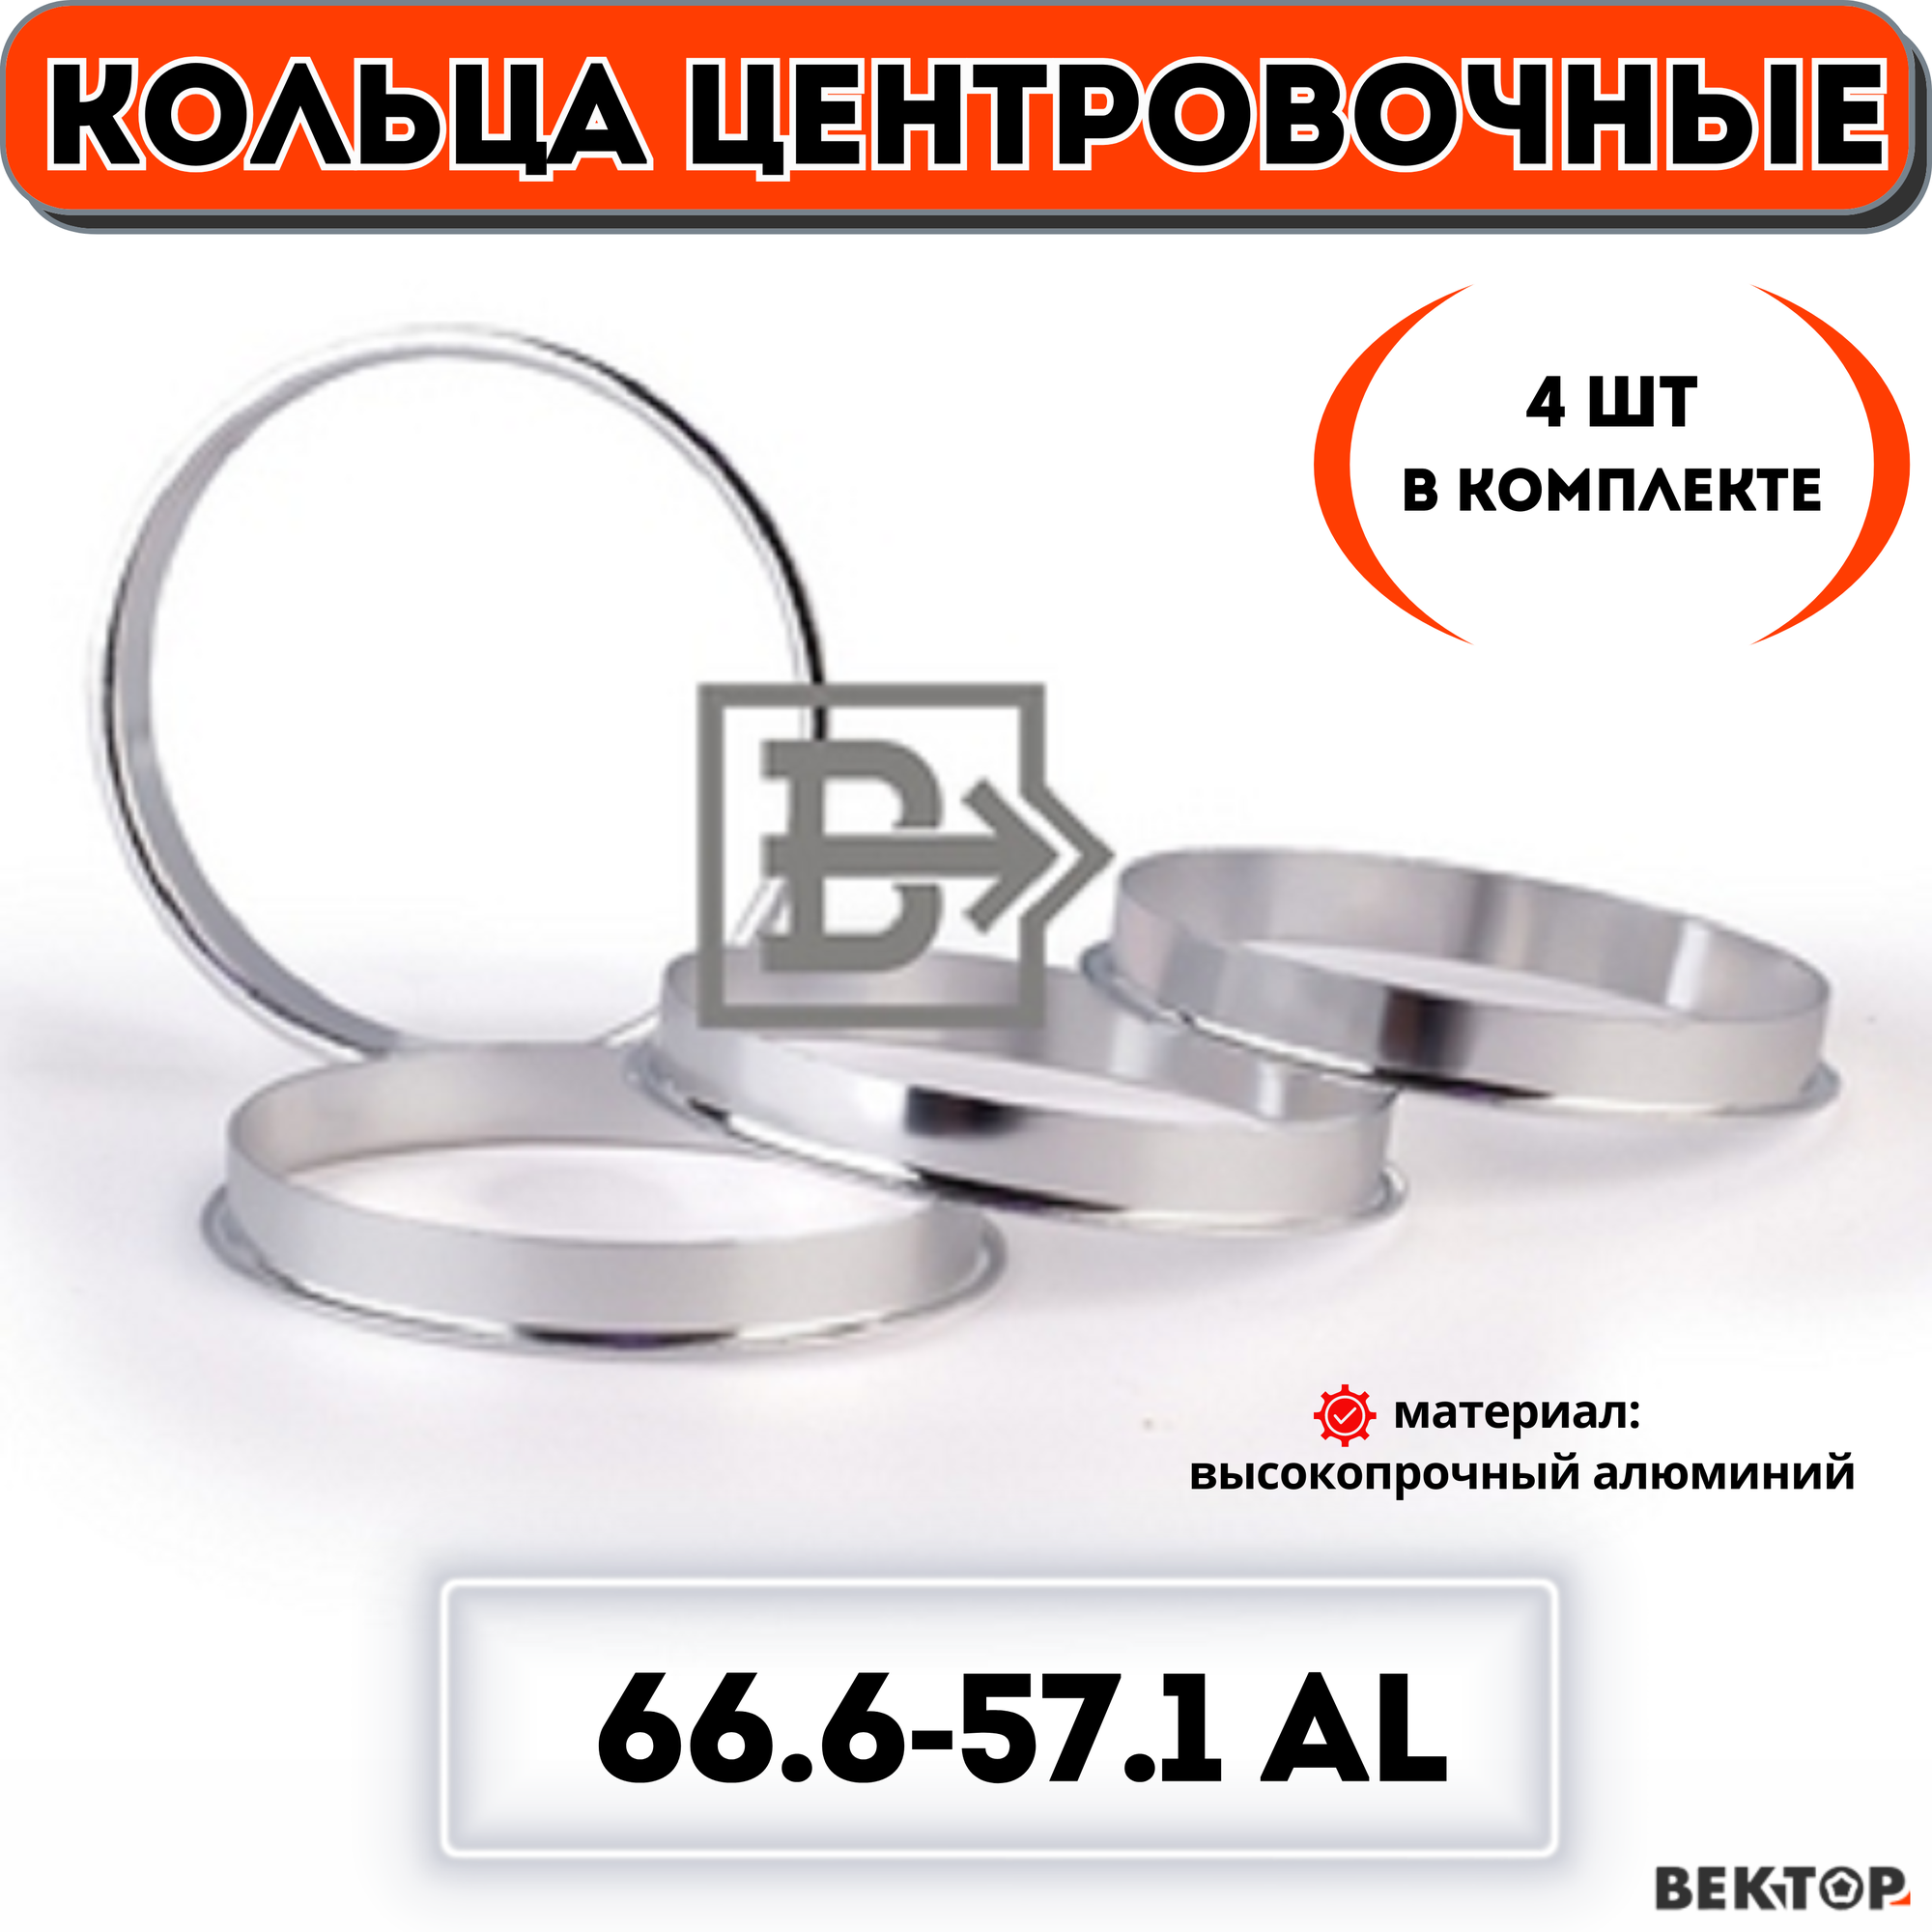 Кольца центровочные для автомобильных дисков 666-571 алюминий "вектор" (комплект 4 шт.)